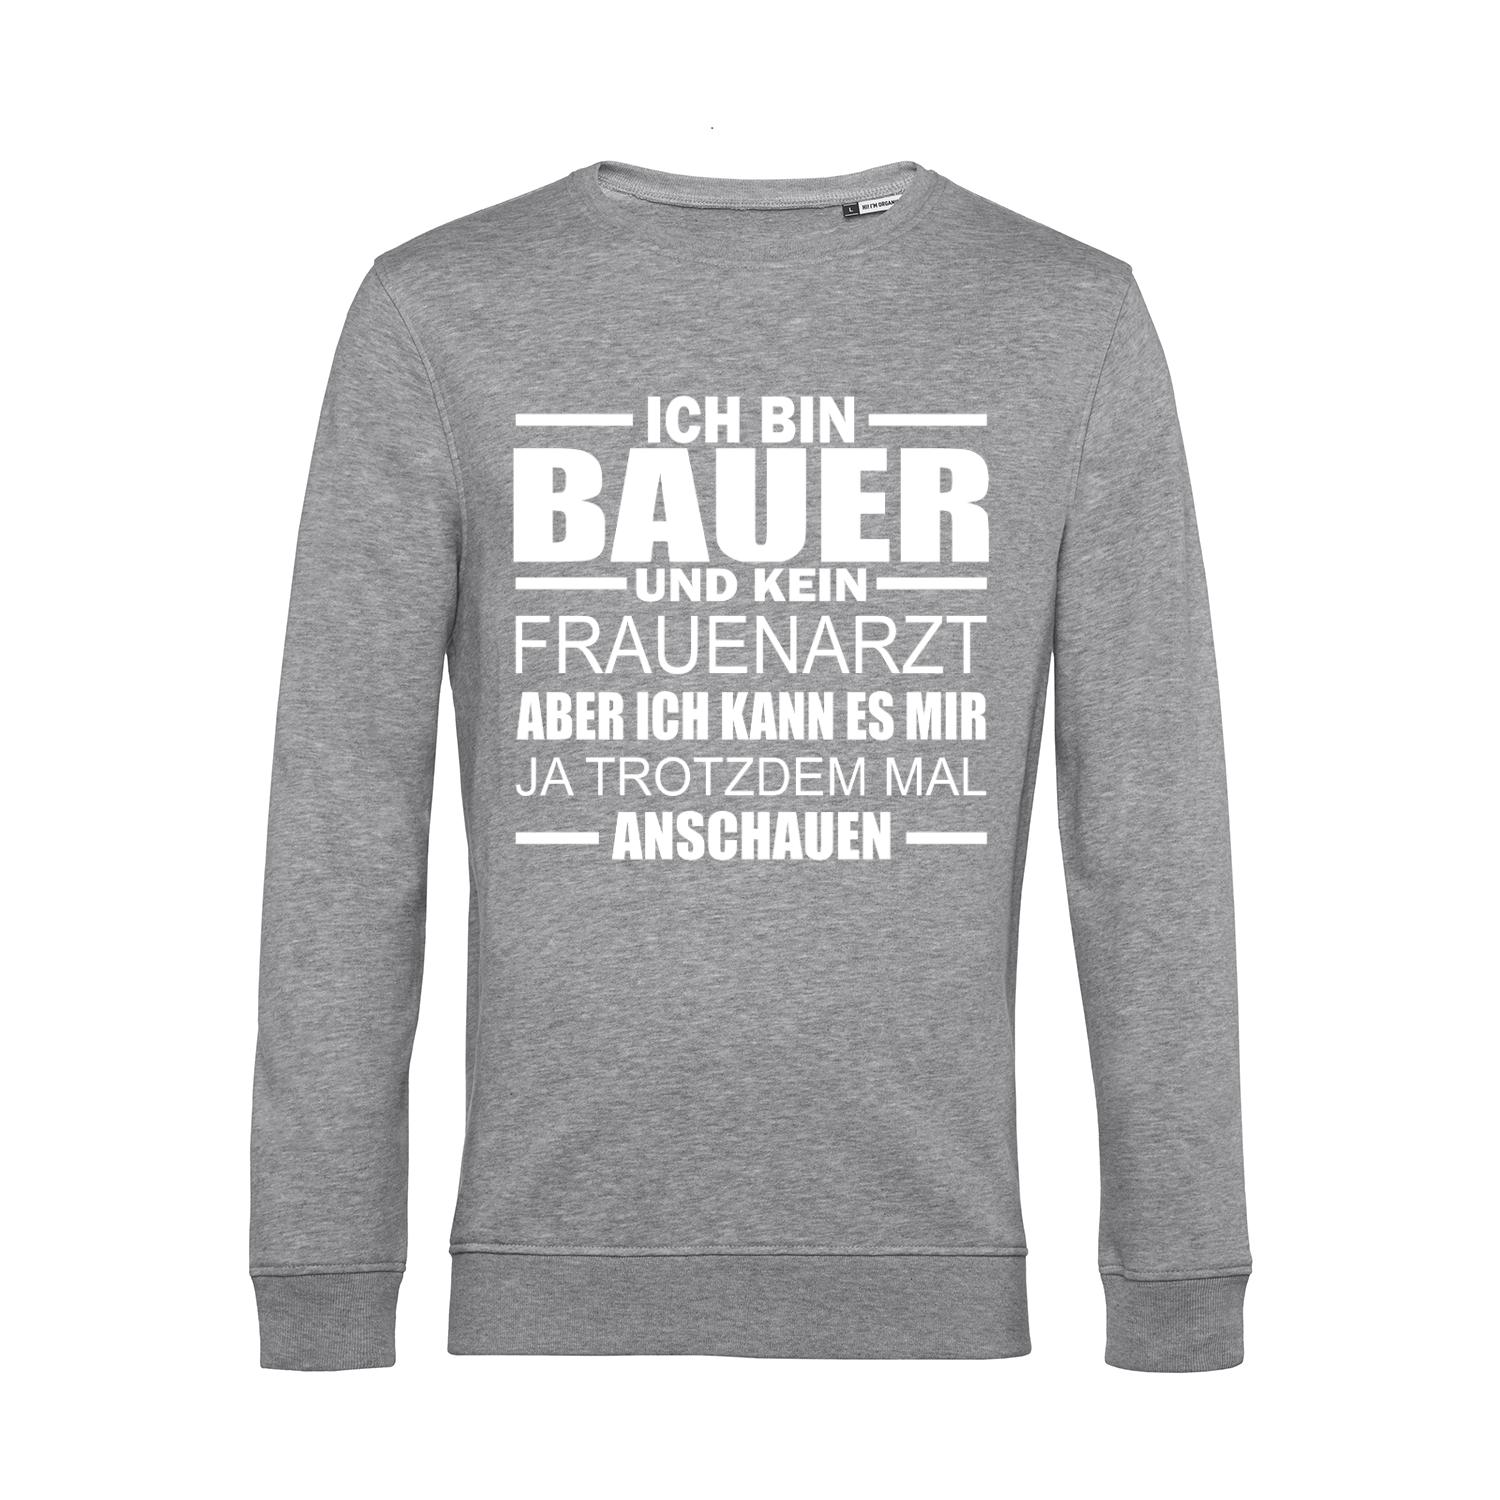 Nachhaltiges Sweatshirt Herren Bauer - Kein Frauenarzt